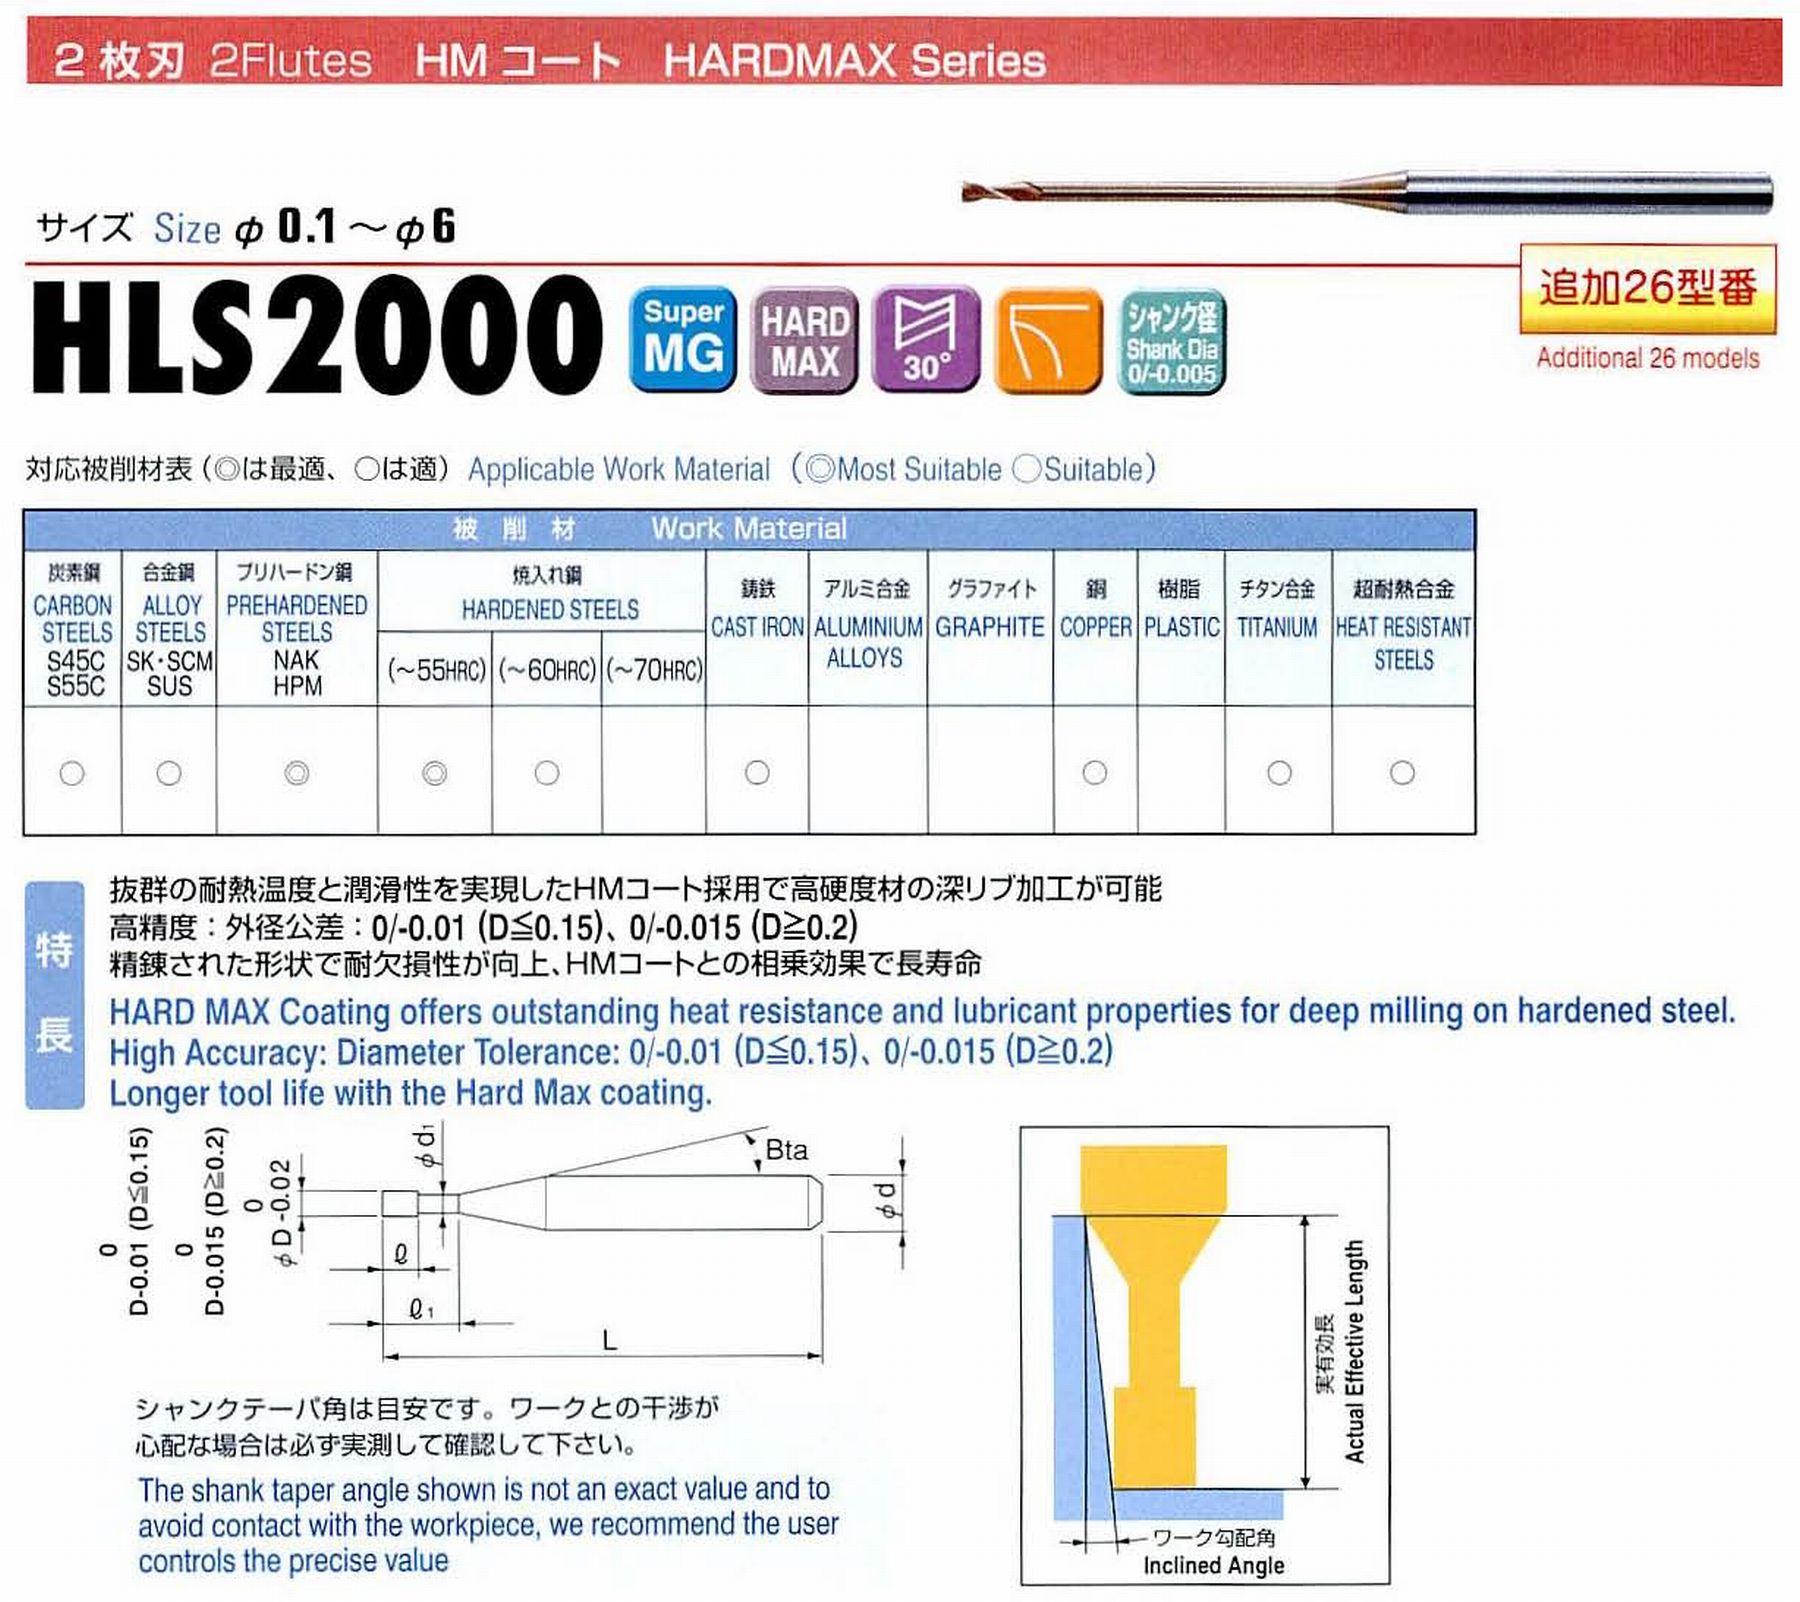 ユニオンツール 2枚刃 HLS2004-035 外径0.4 有効長3.5 刃長0.6 首径0.38 シャンクテーパ角16° 全長45 シャンク径4